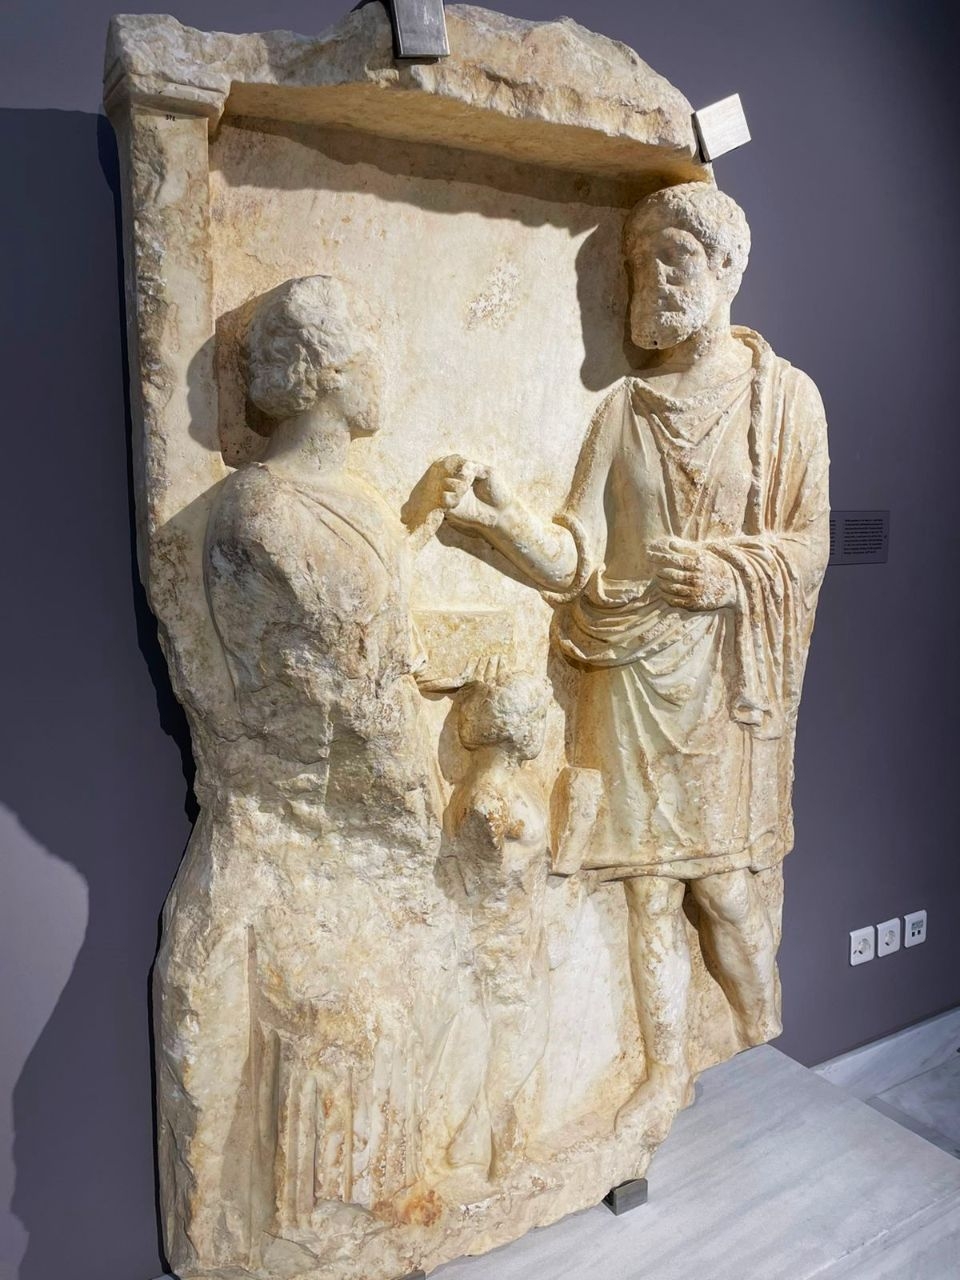 Археологический музей Ираклеона Ираклион, Греция